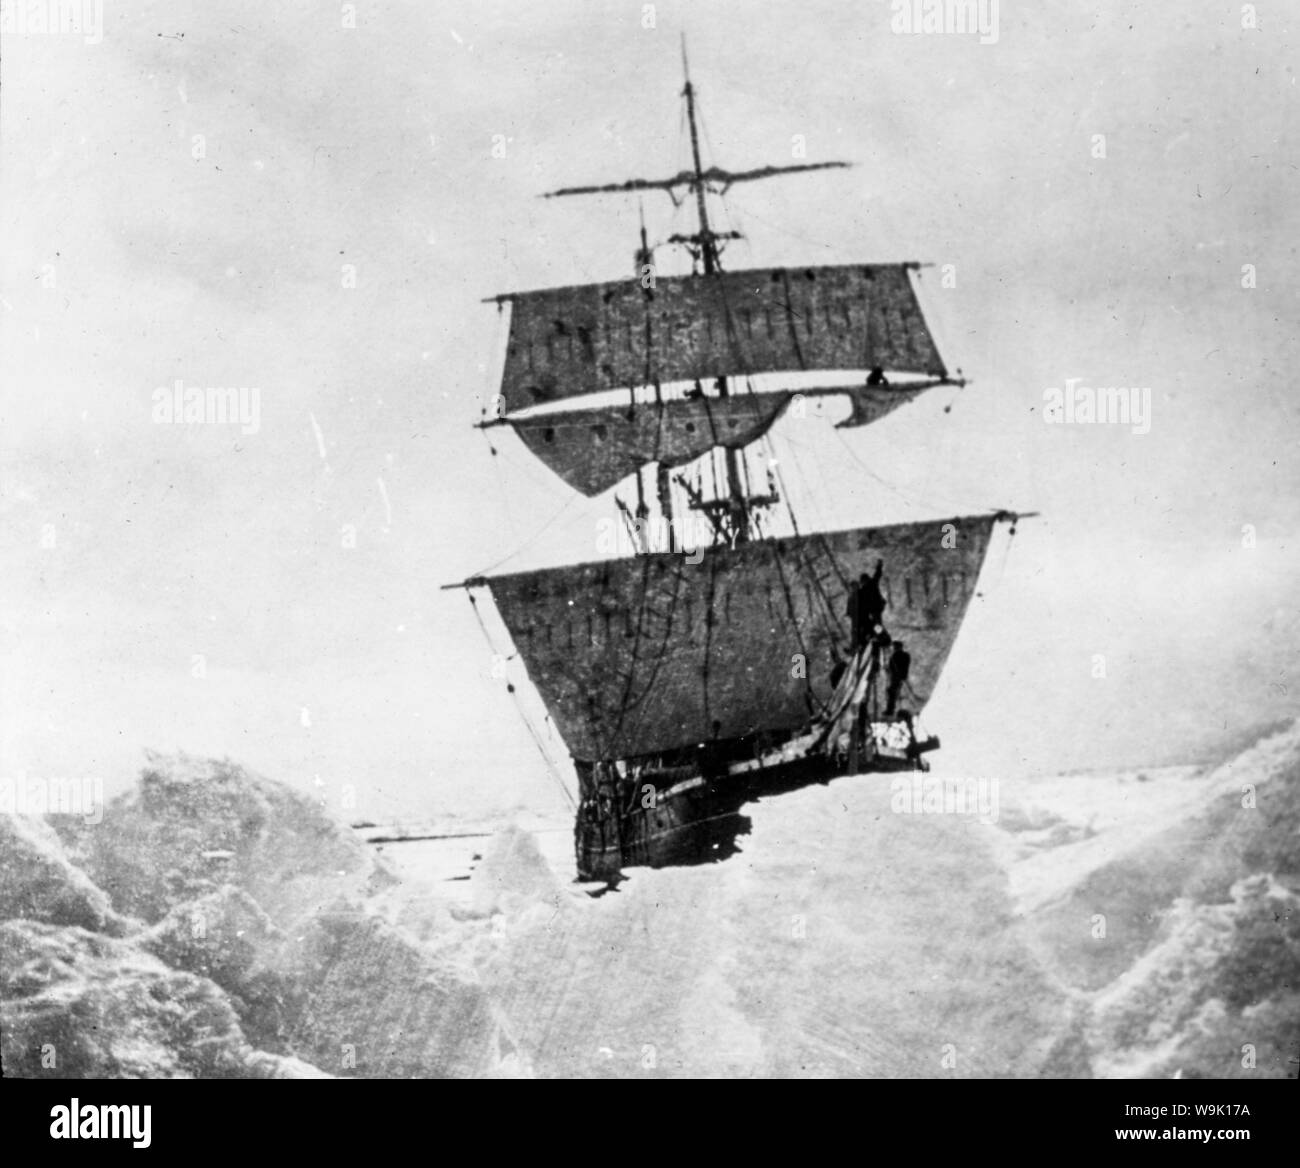 El Nimrod, Ernest Shackleton de nave celebrada en el hielo de la antártica británica expedición al Polo Sur en 1908-1909, fotografía. Foto de stock